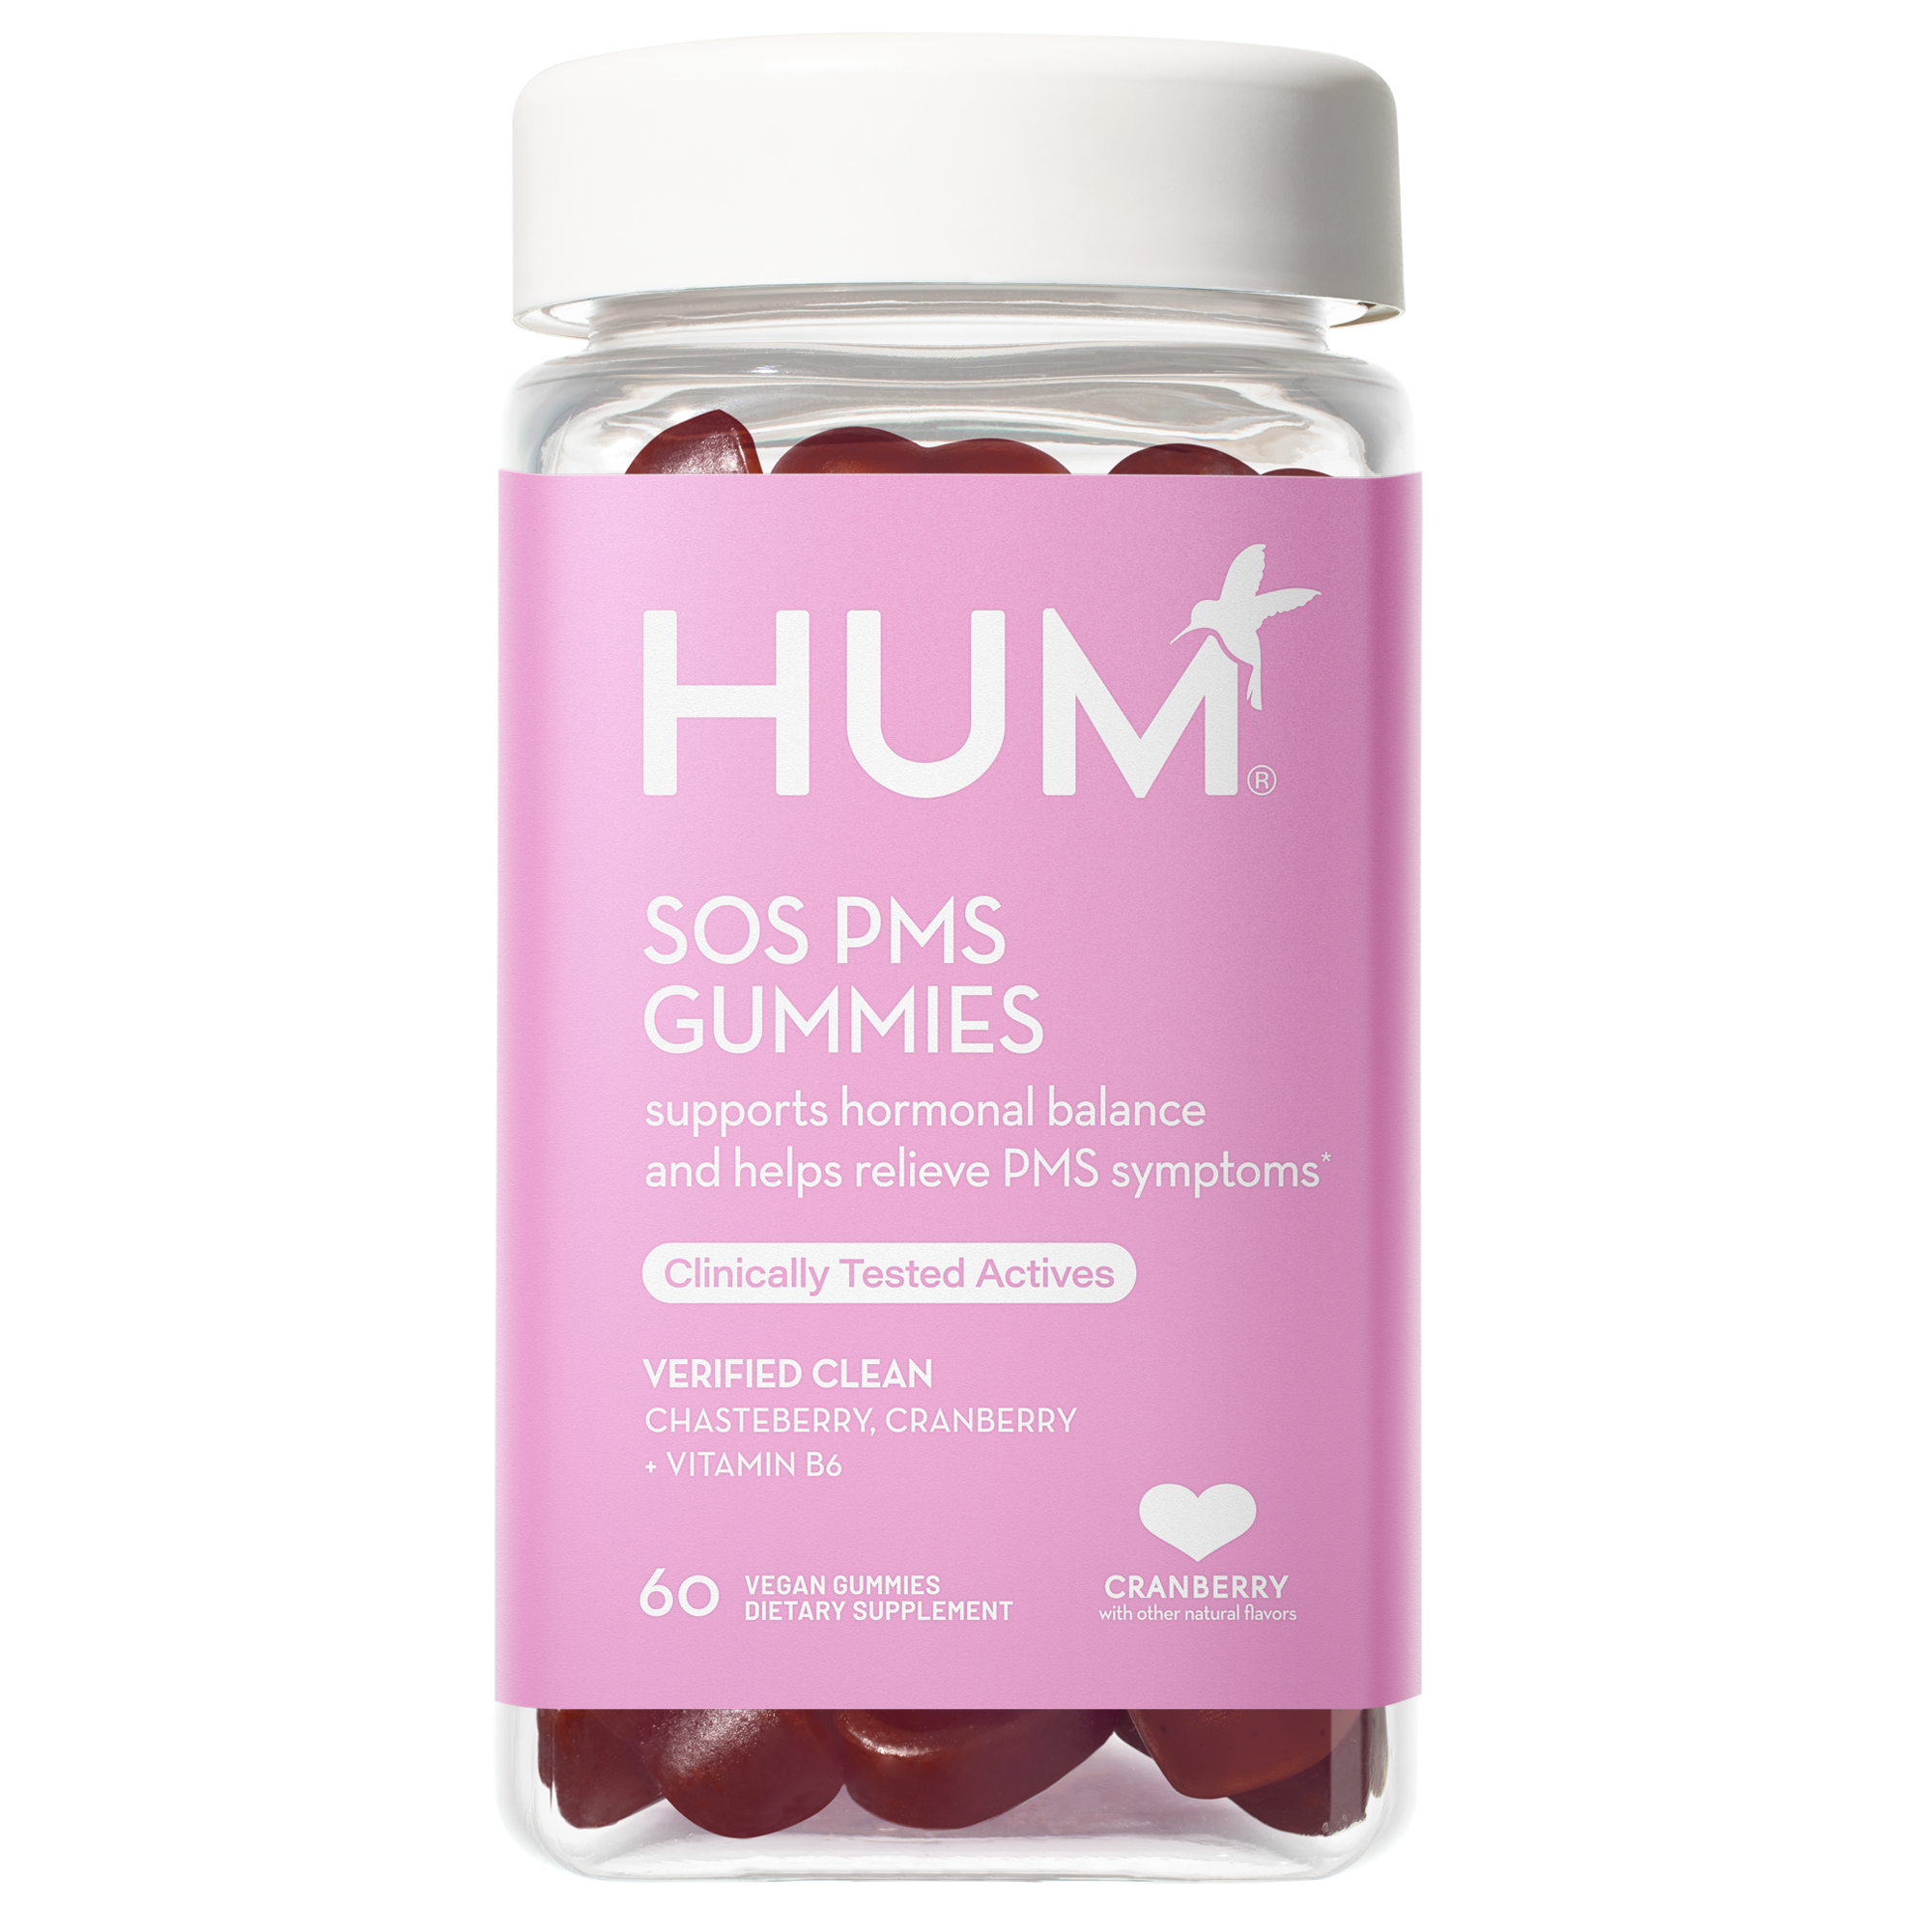 SOS PMS Gummies